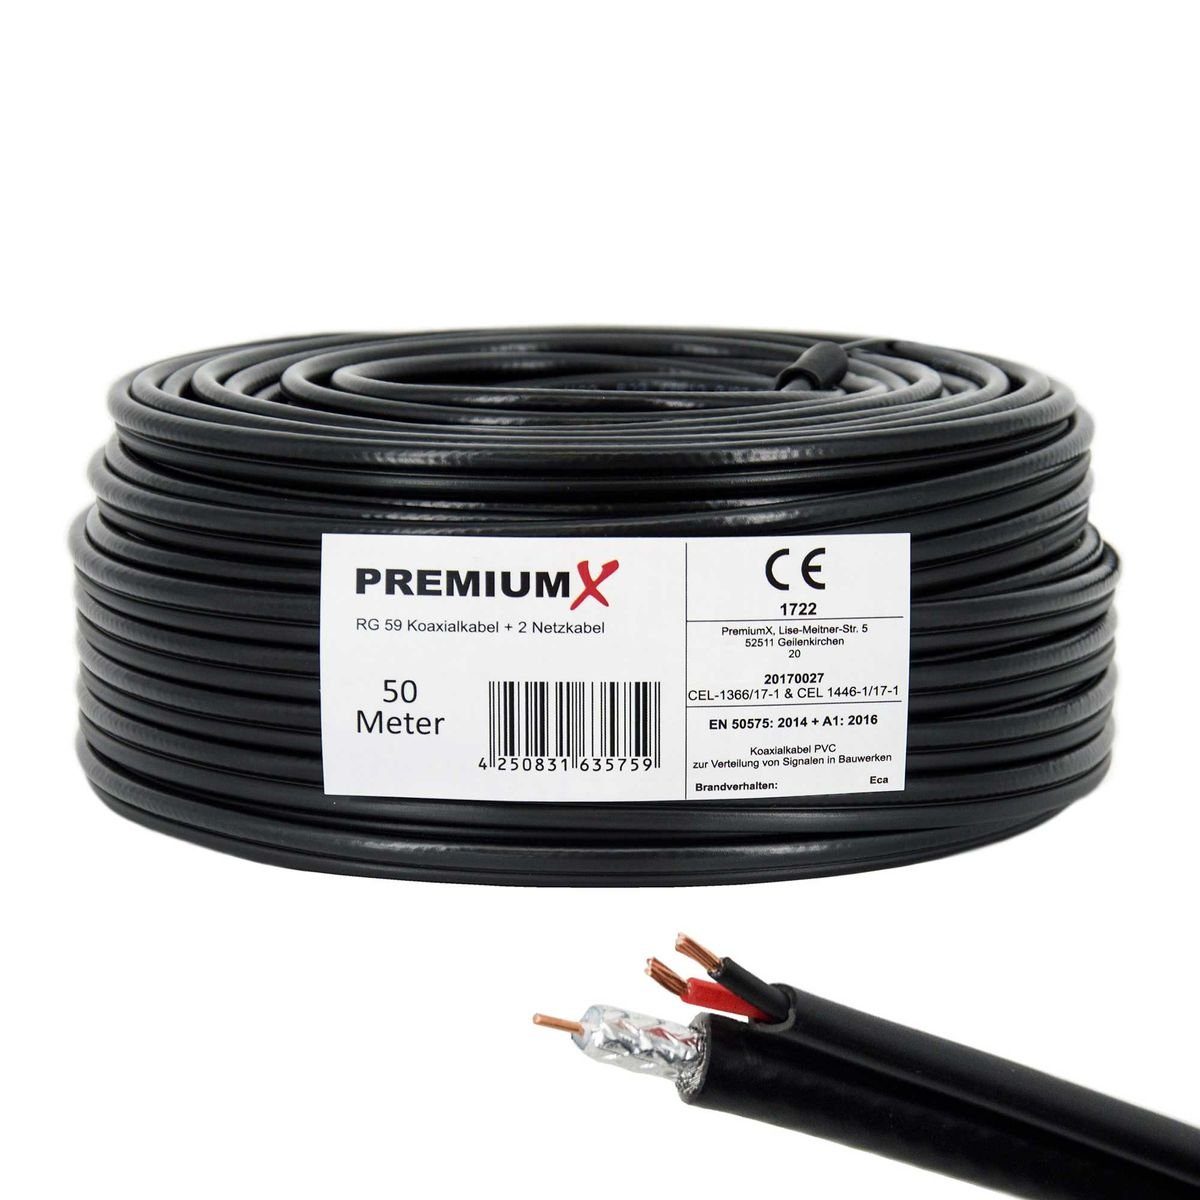 PremiumX »50m RG59 Koaxialkabel + 2 Netzkabel Eca Videobild und  Stromversorgung Kombi Koaxkabel/Strom Video-Kabel für Videoüberwachung  Überwachungskamera« Installationskabel online kaufen | OTTO